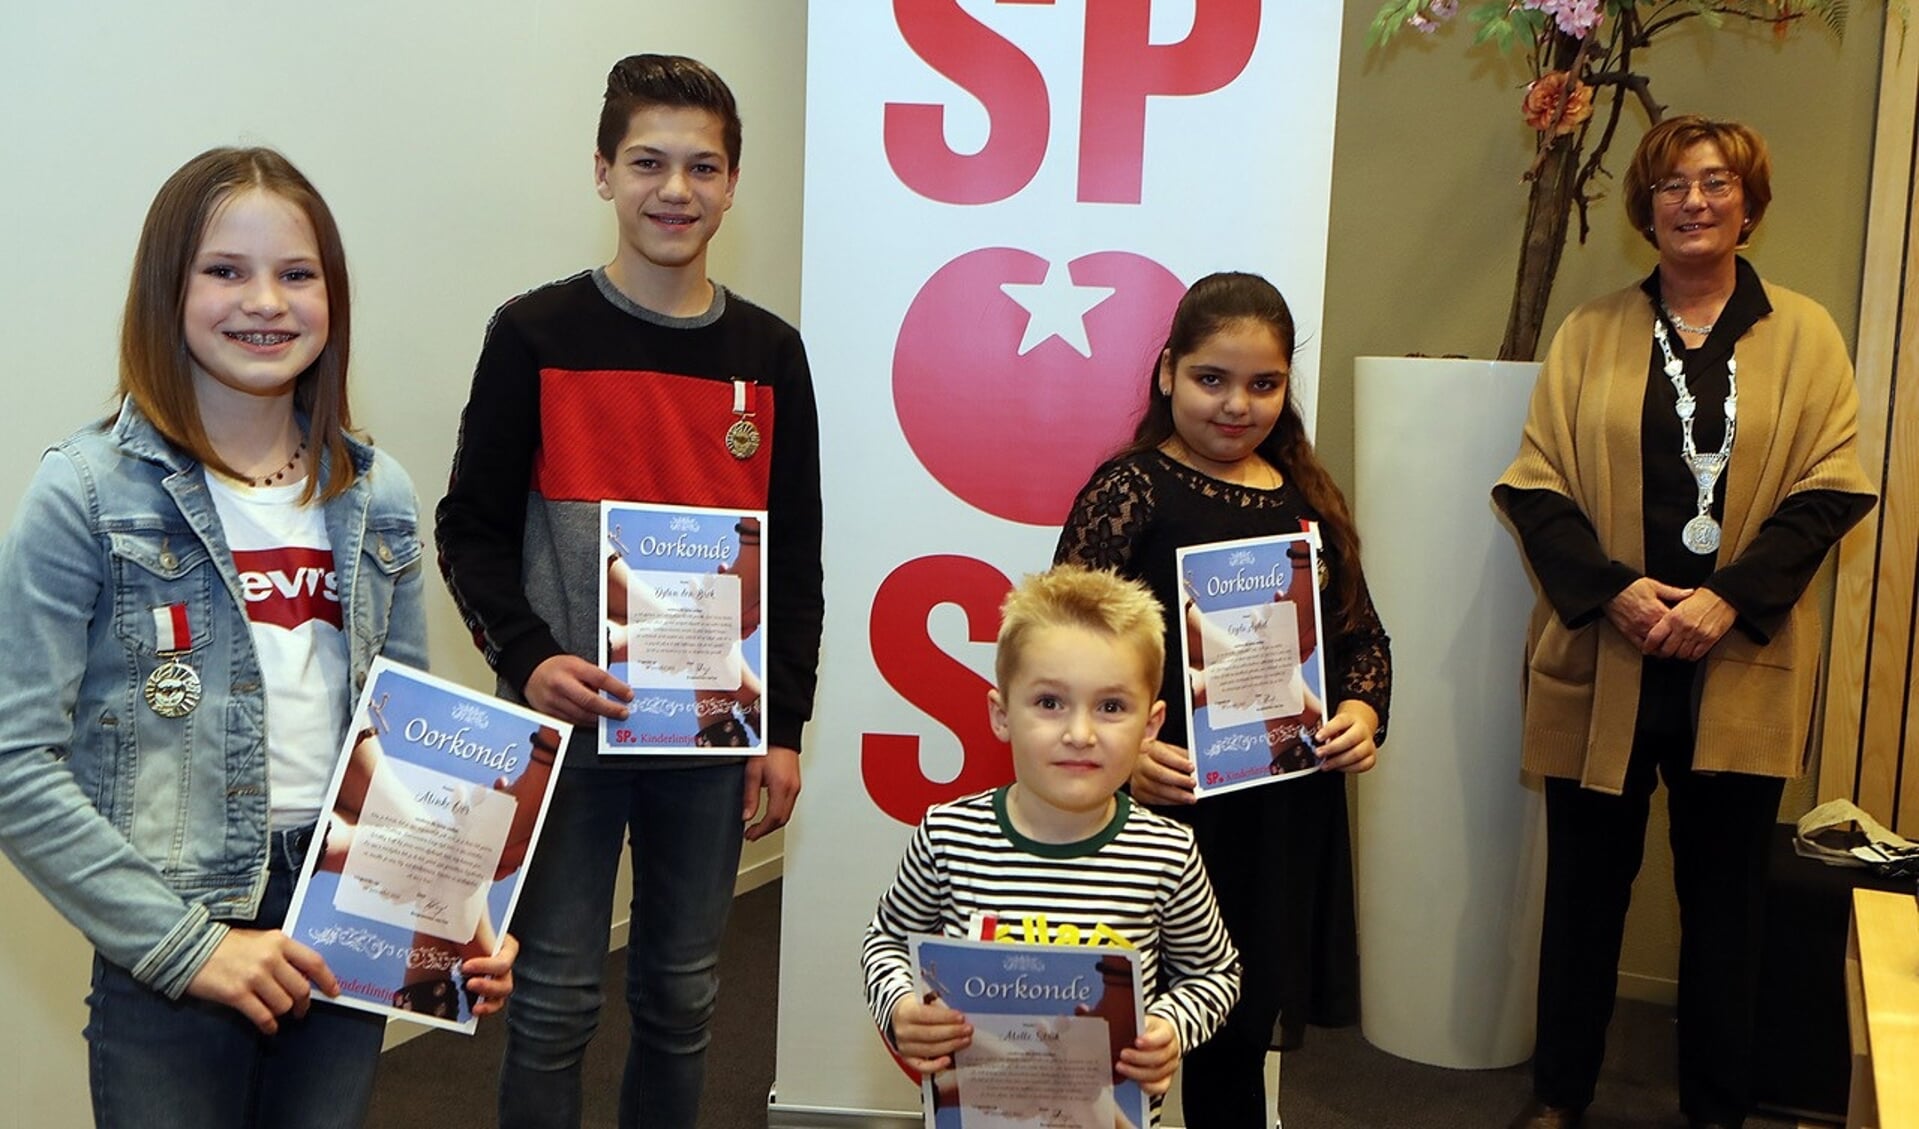 De SP Kinderlintjes werden uitgereikt aan vier kinderen. (Foto: Hans van der Poel)